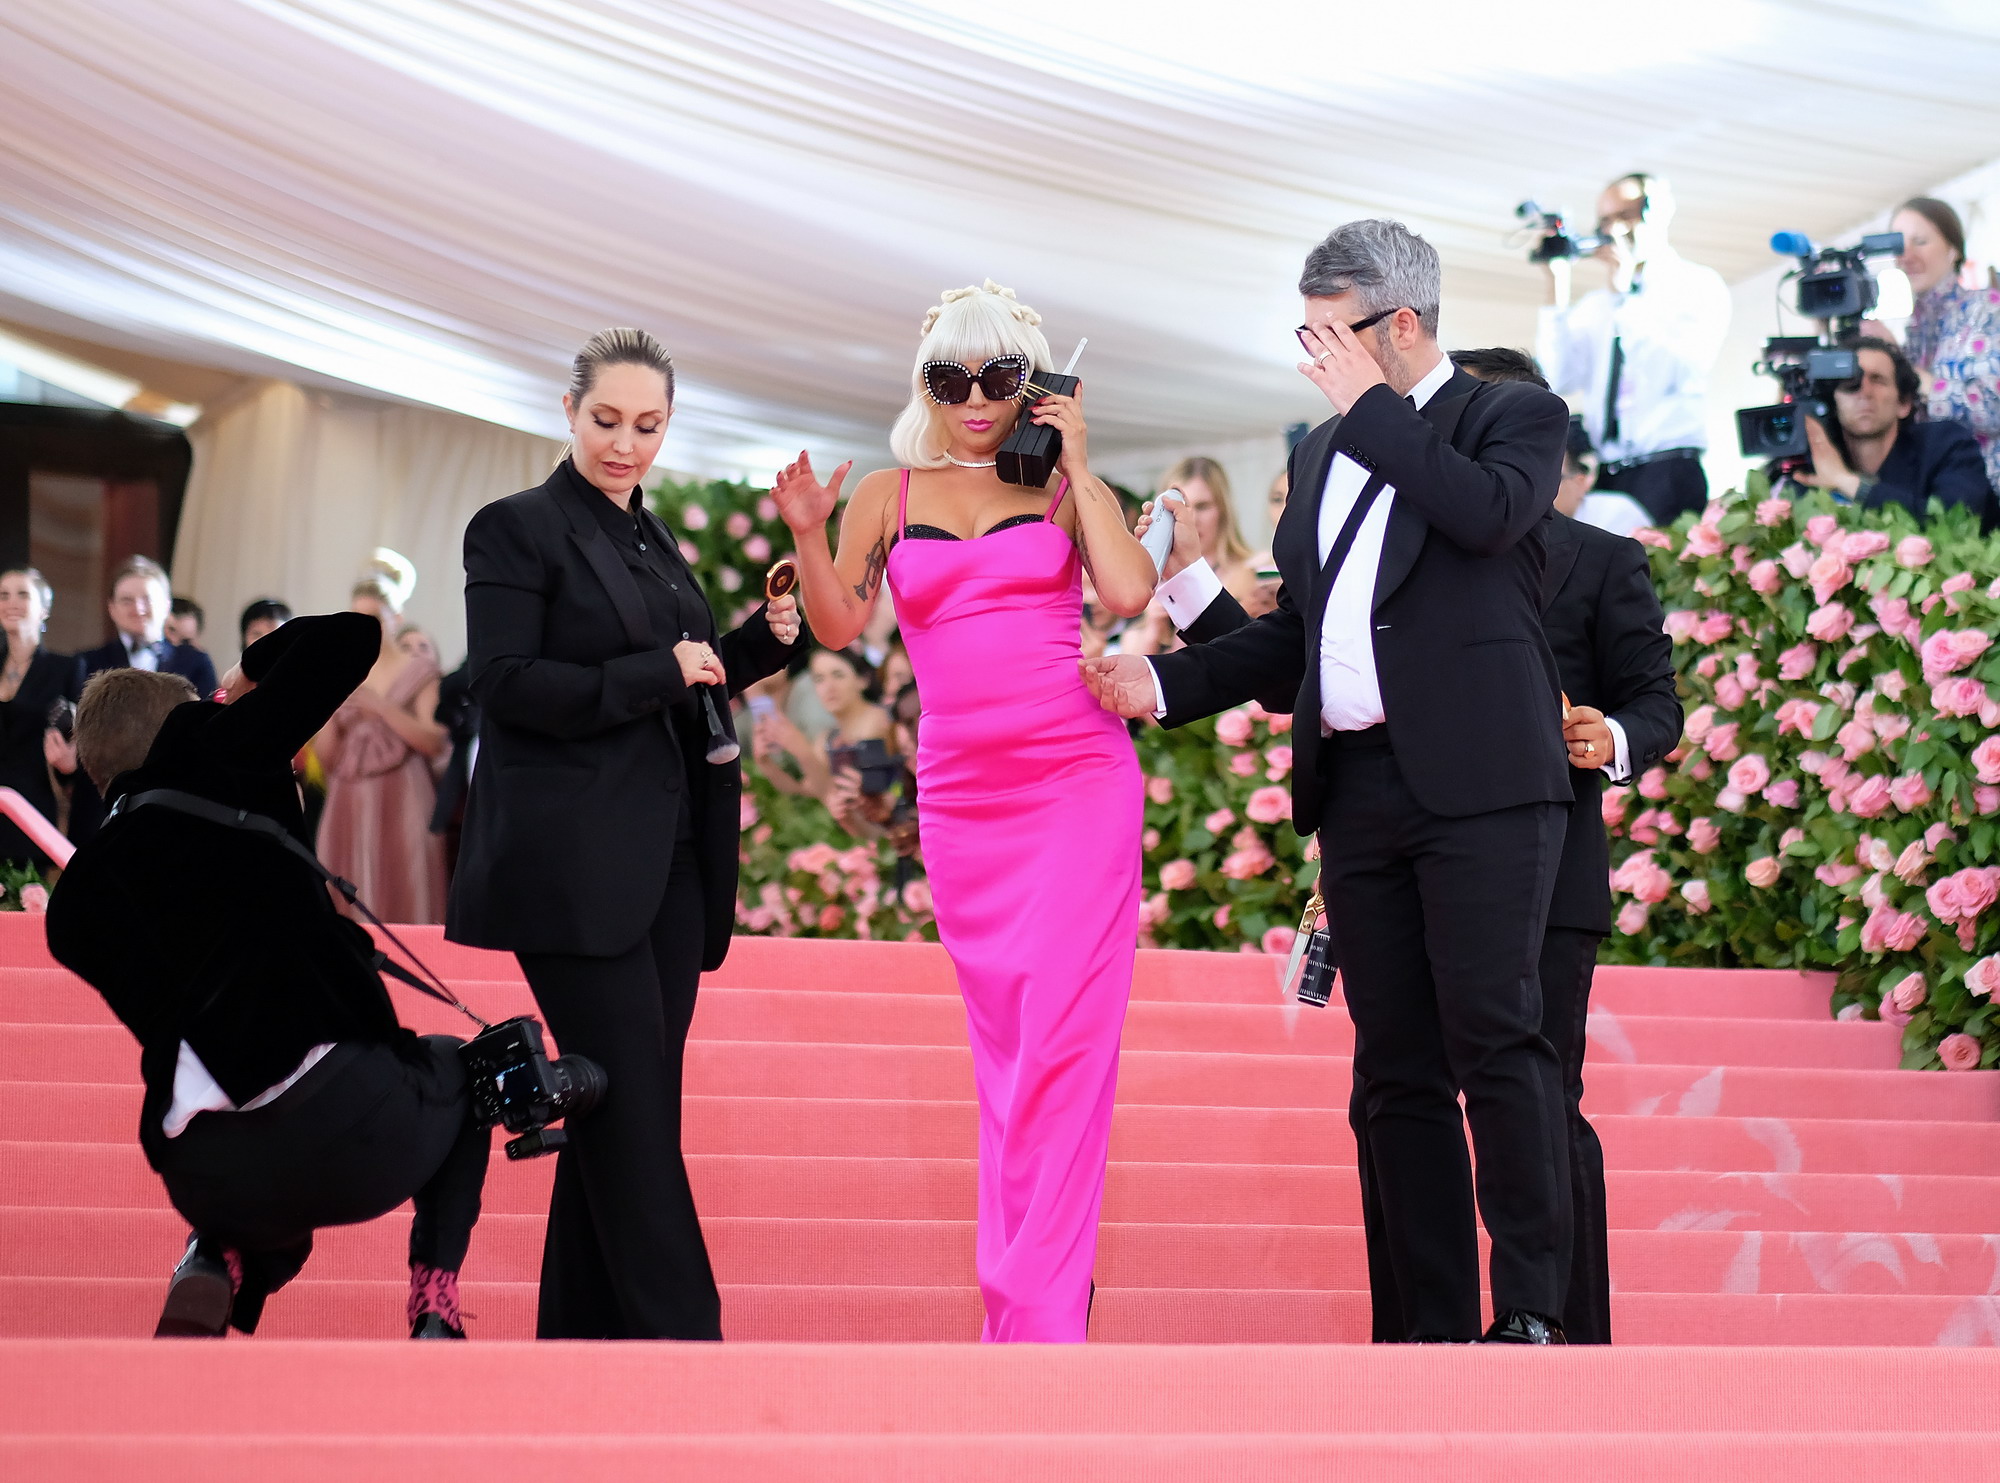 纽约时尚庆典Lady Gaga太性感 黑人小哥表情亮了